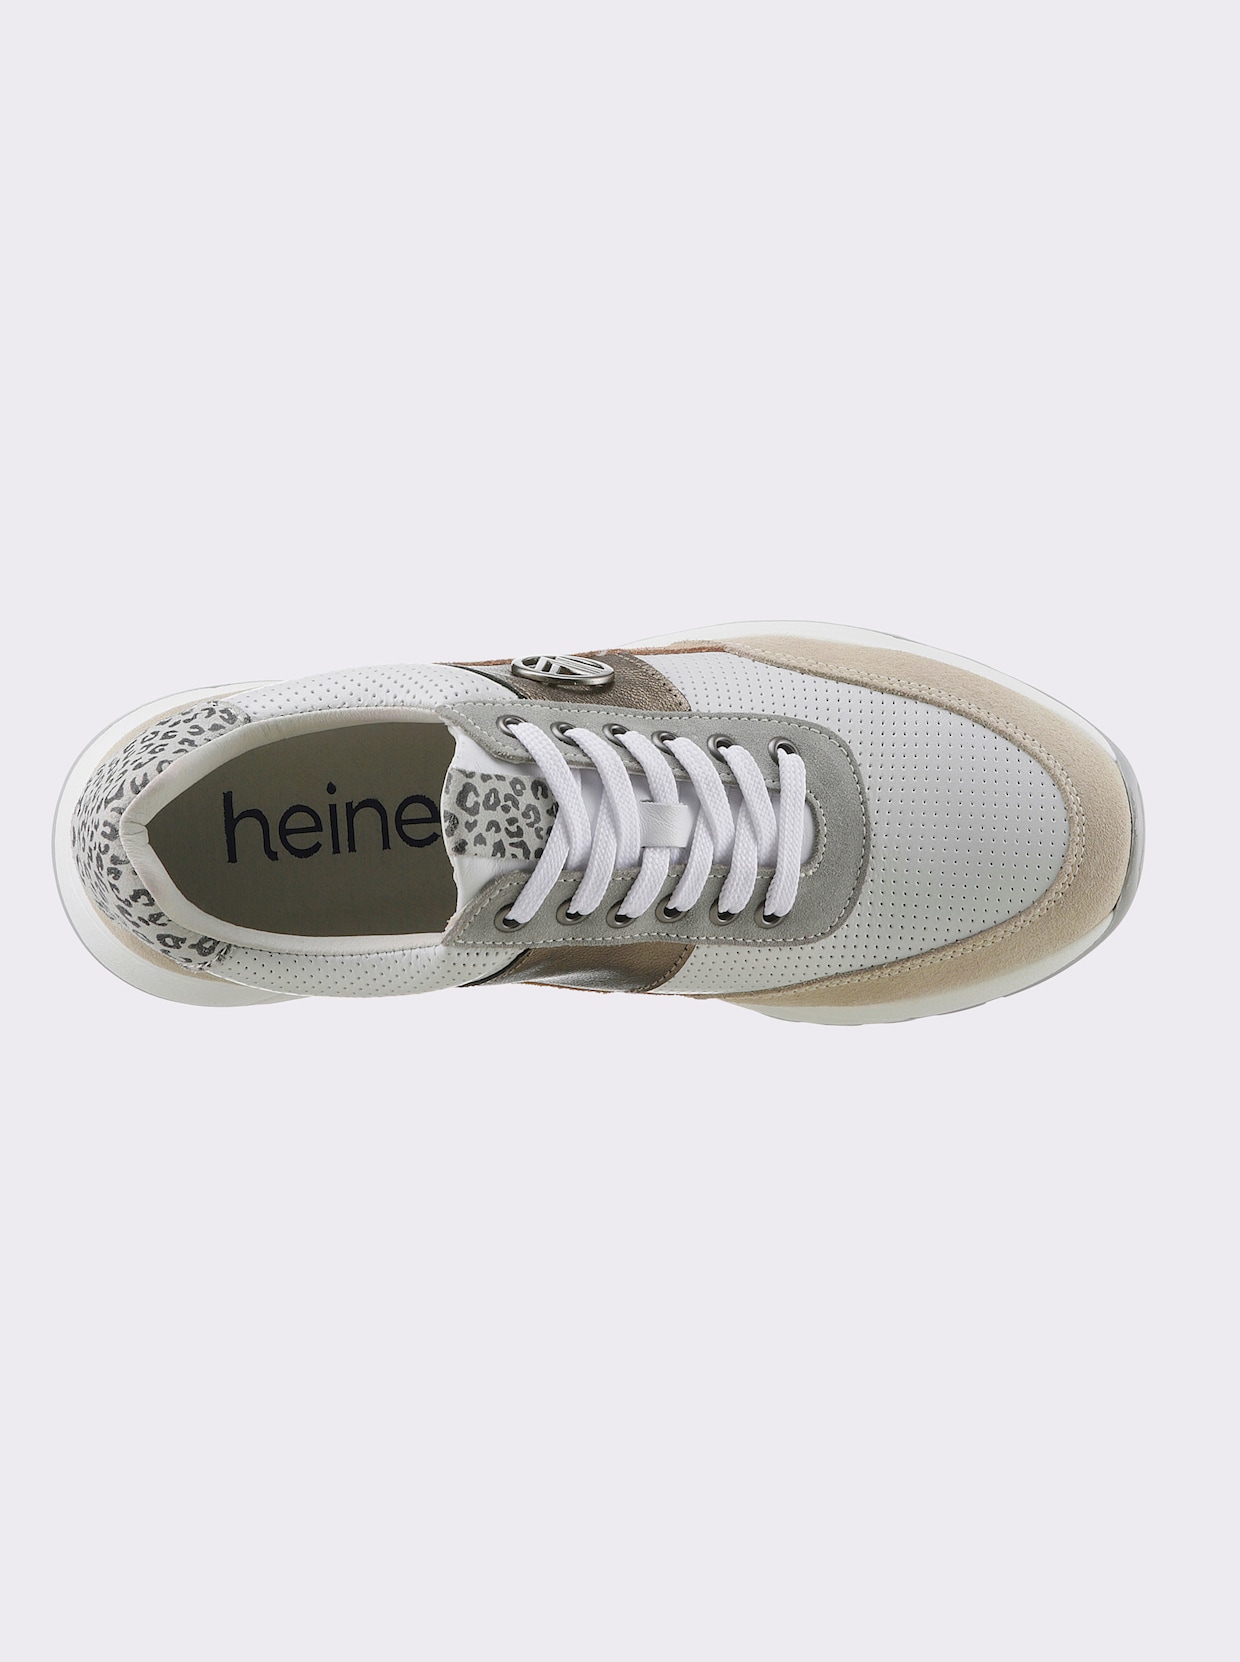 heine Sneaker - weiss-taupe